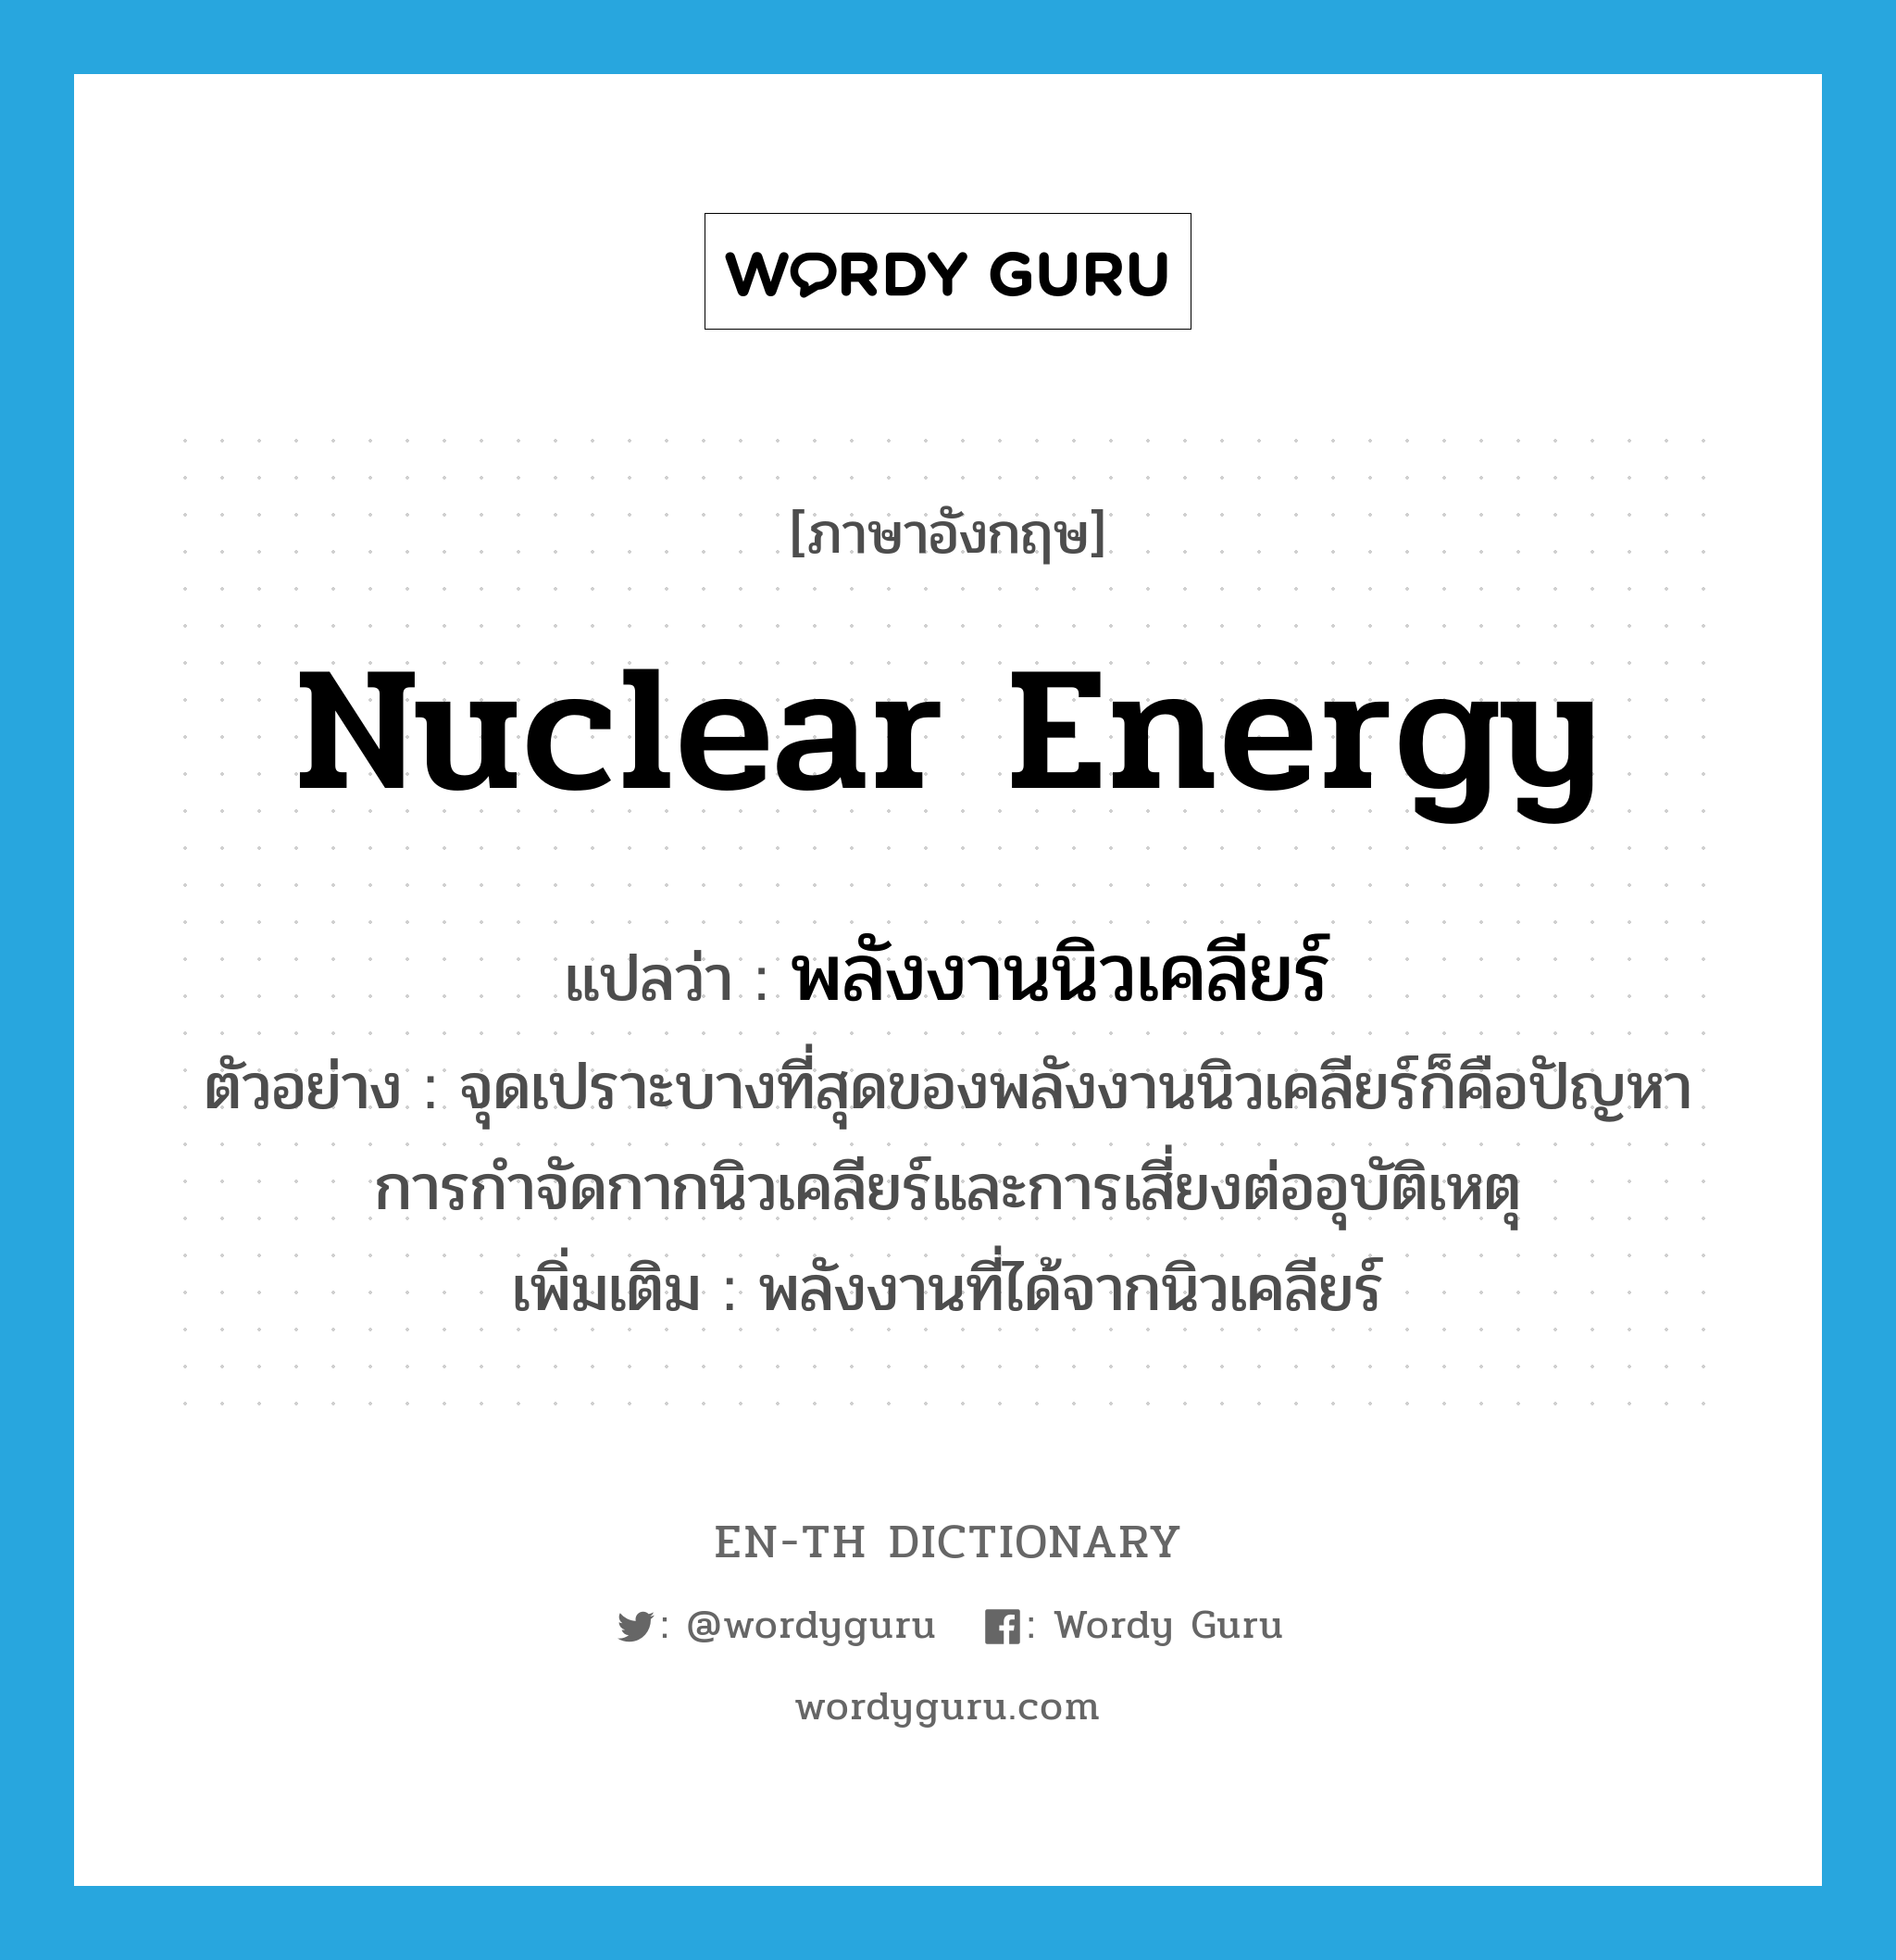 nuclear energy แปลว่า?, คำศัพท์ภาษาอังกฤษ nuclear energy แปลว่า พลังงานนิวเคลียร์ ประเภท N ตัวอย่าง จุดเปราะบางที่สุดของพลังงานนิวเคลียร์ก็คือปัญหาการกำจัดกากนิวเคลียร์และการเสี่ยงต่ออุบัติเหตุ เพิ่มเติม พลังงานที่ได้จากนิวเคลียร์ หมวด N